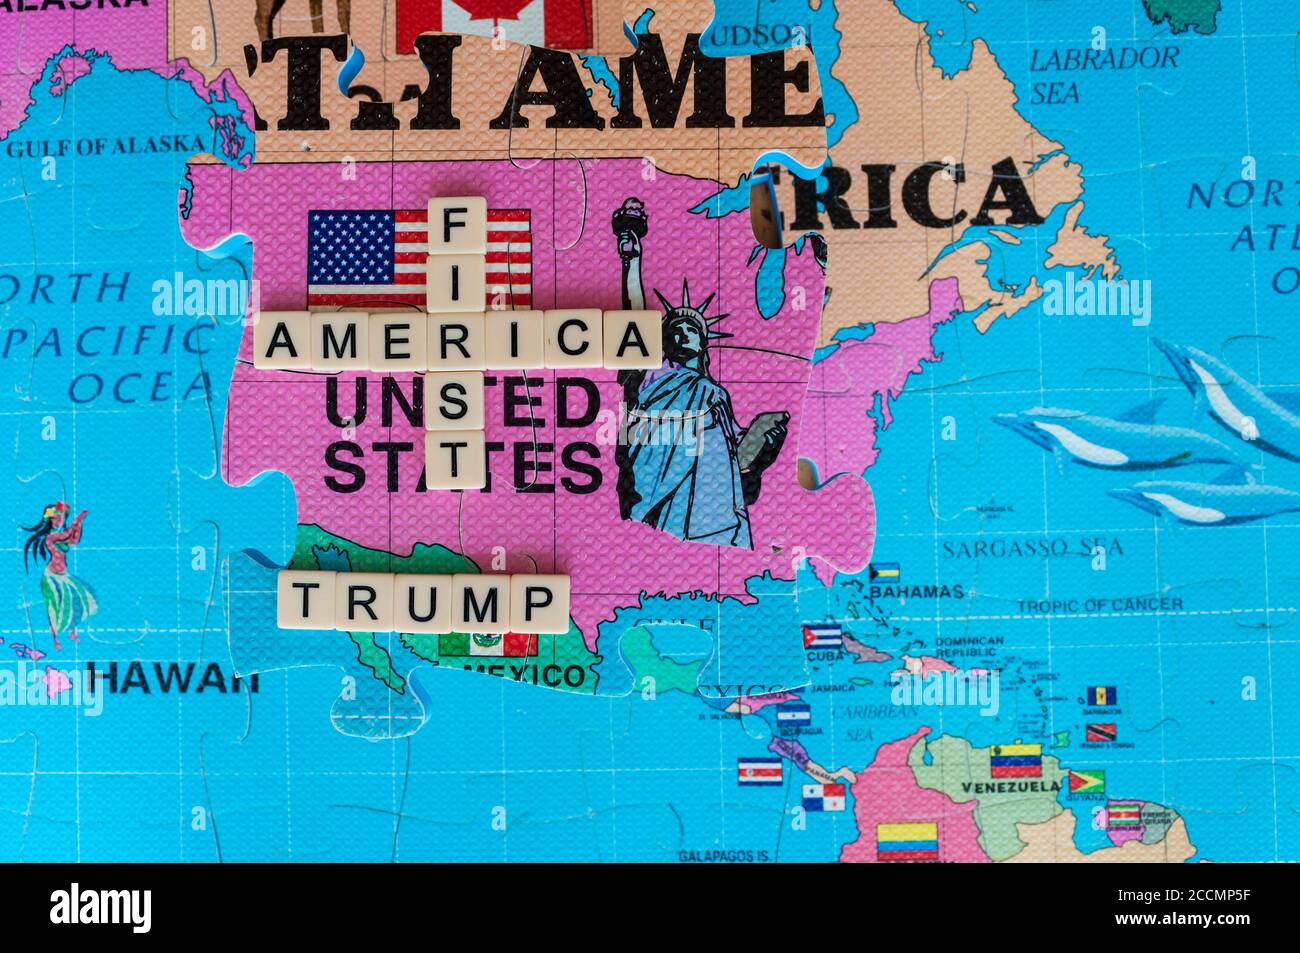 America prima di tutto, in parole e immagini su un puzzle mappa del mondo 3D. Un'immagine iconica dell'approccio di Trump alla geopolitica. Popolare posizione di destra negli Stati Uniti. Foto Stock